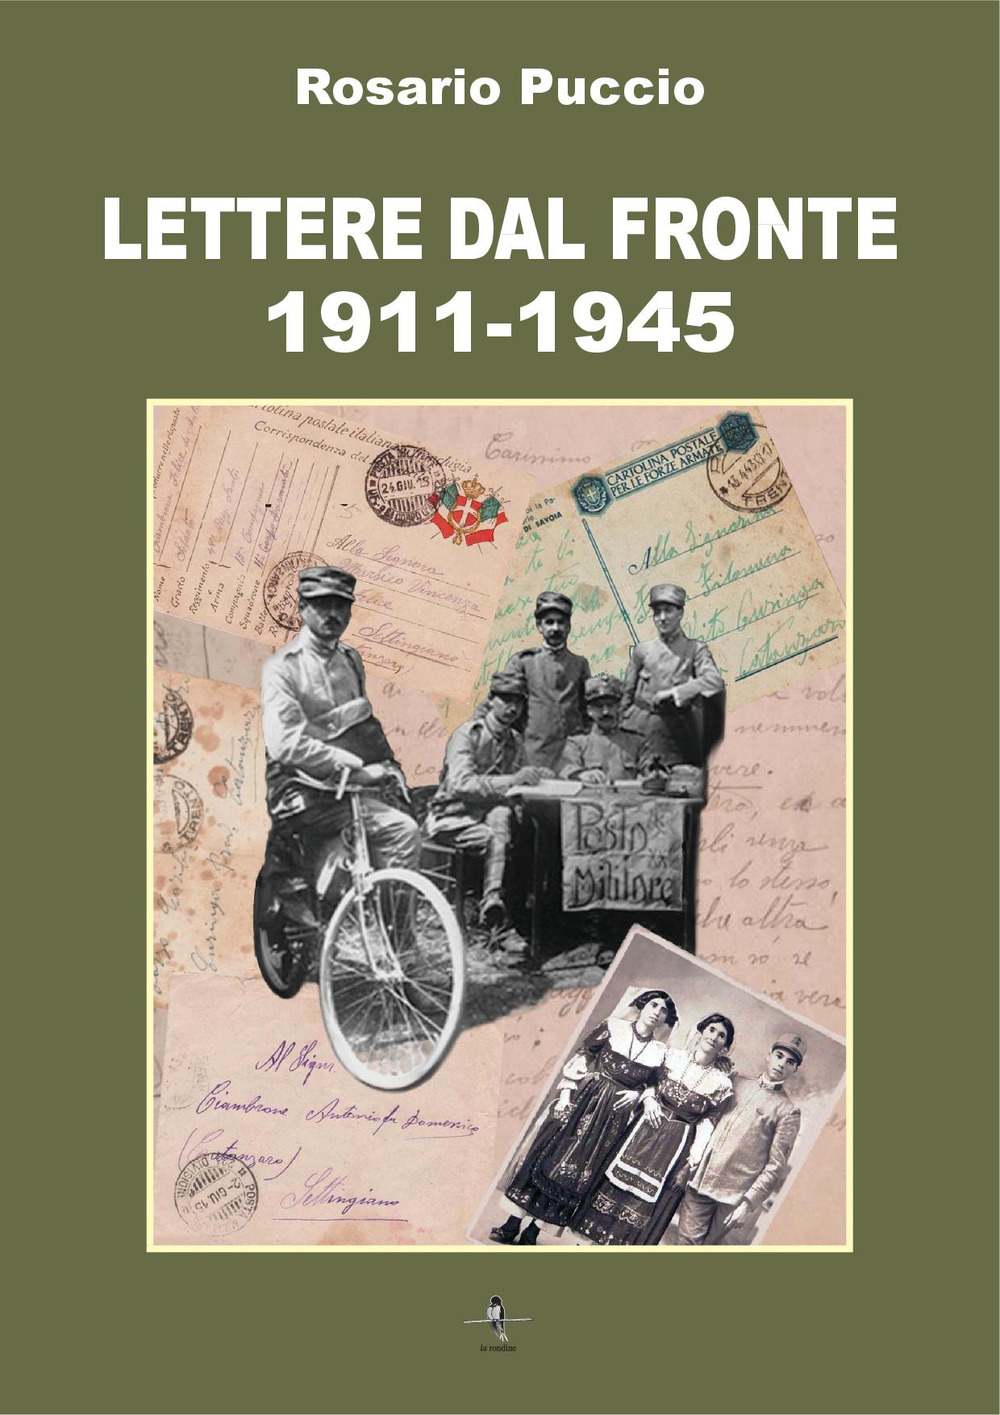 Libri Rosario Puccio - Lettere Dal Fronte 1911-1945 NUOVO SIGILLATO, EDIZIONE DEL 22/06/2022 SUBITO DISPONIBILE